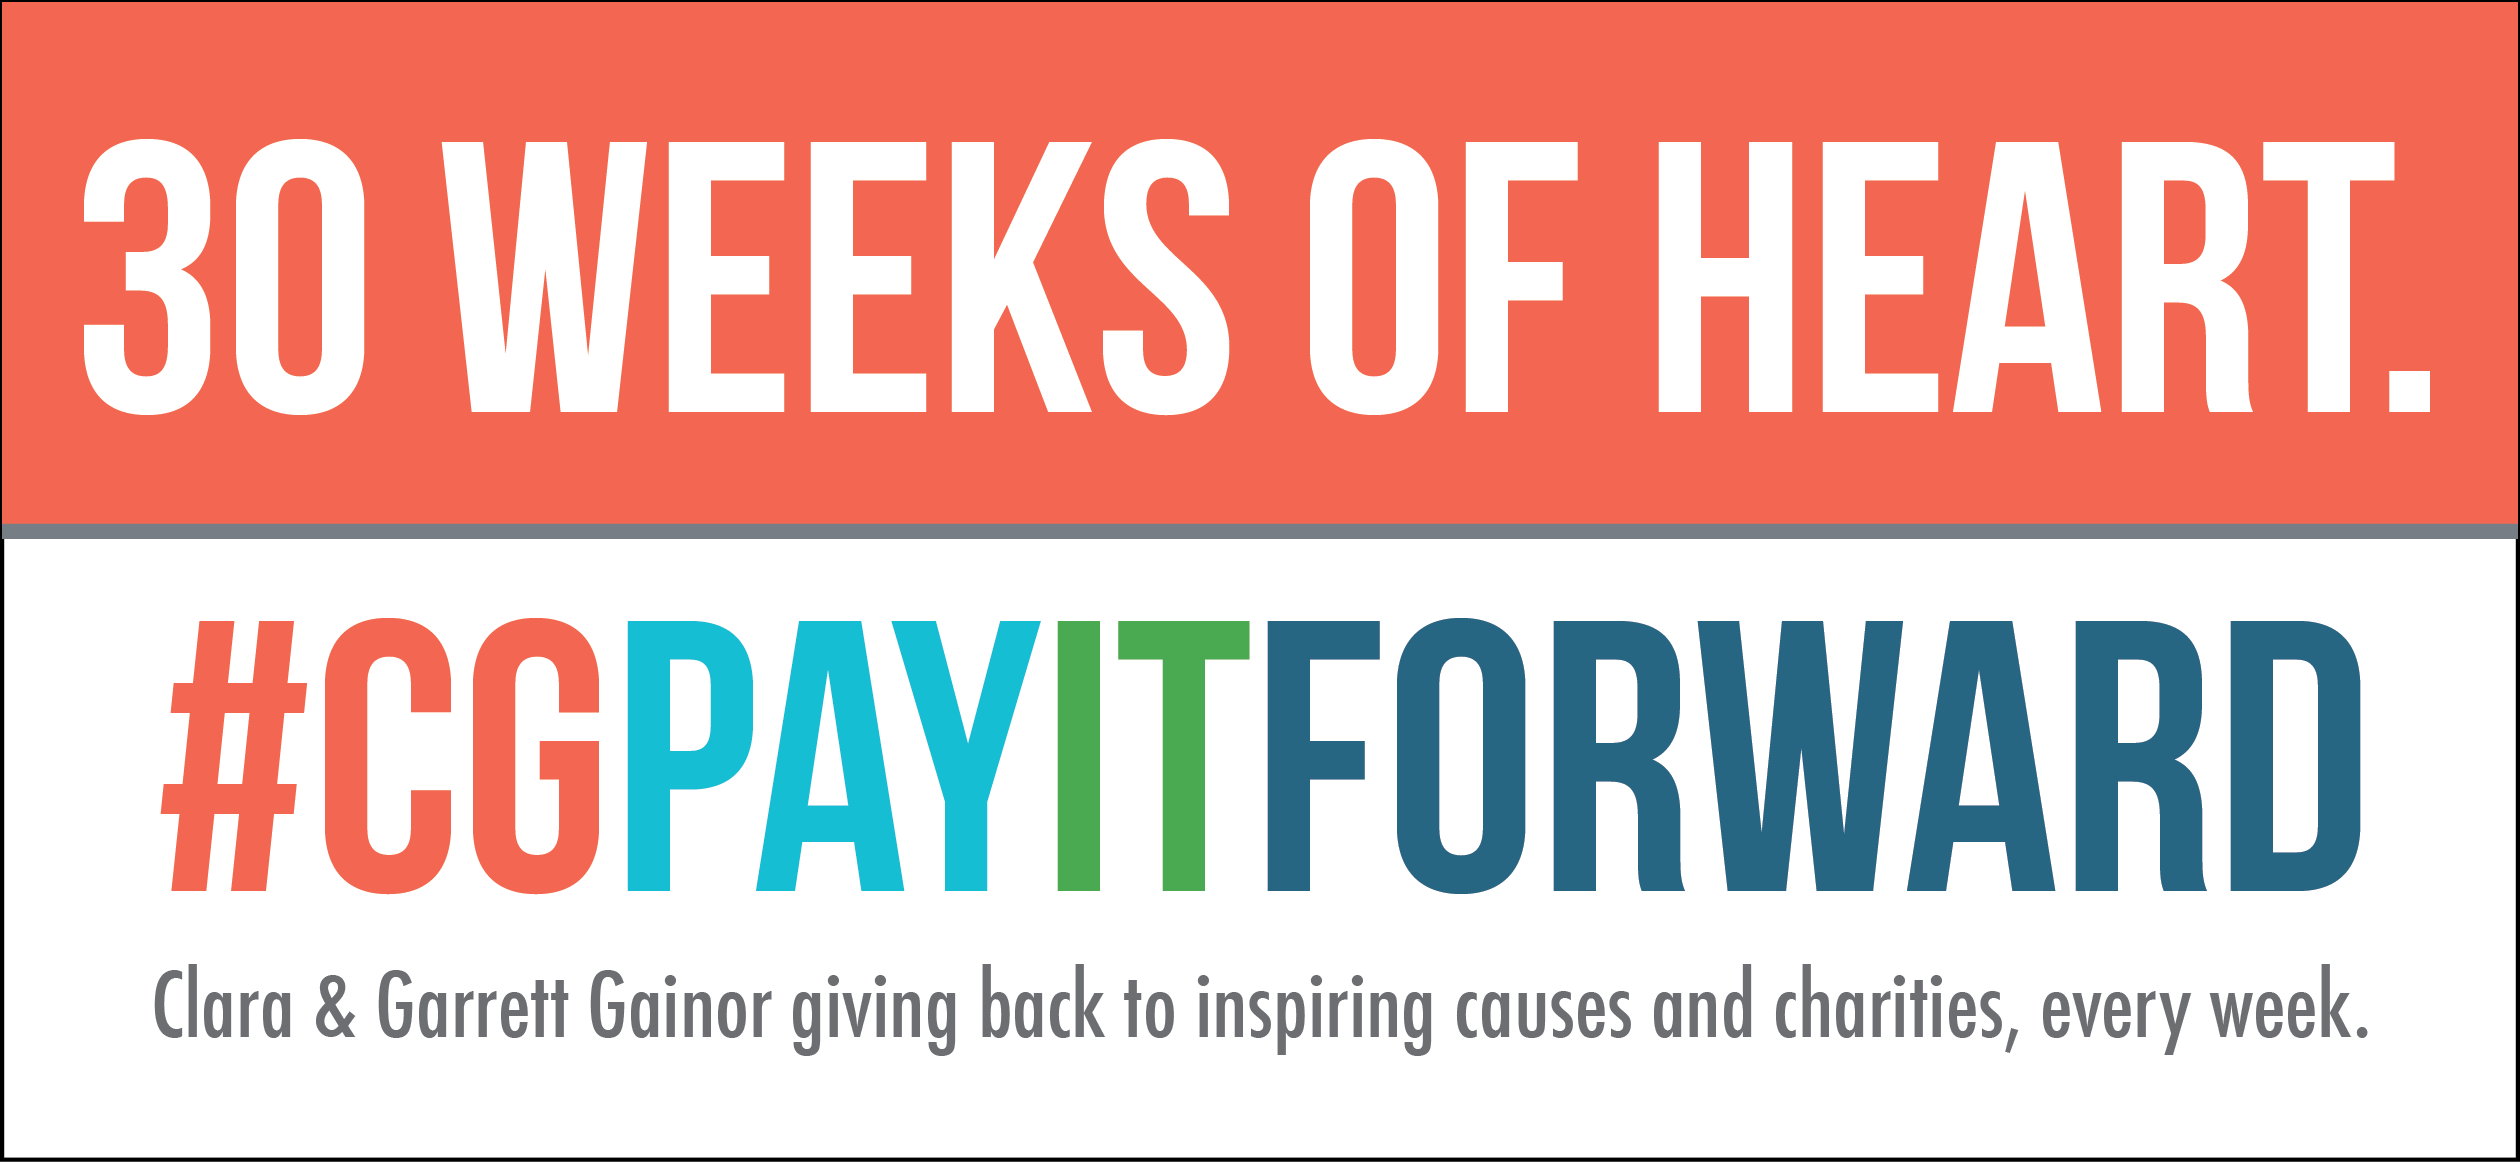 30 weeks of heart – #CGPayItForward